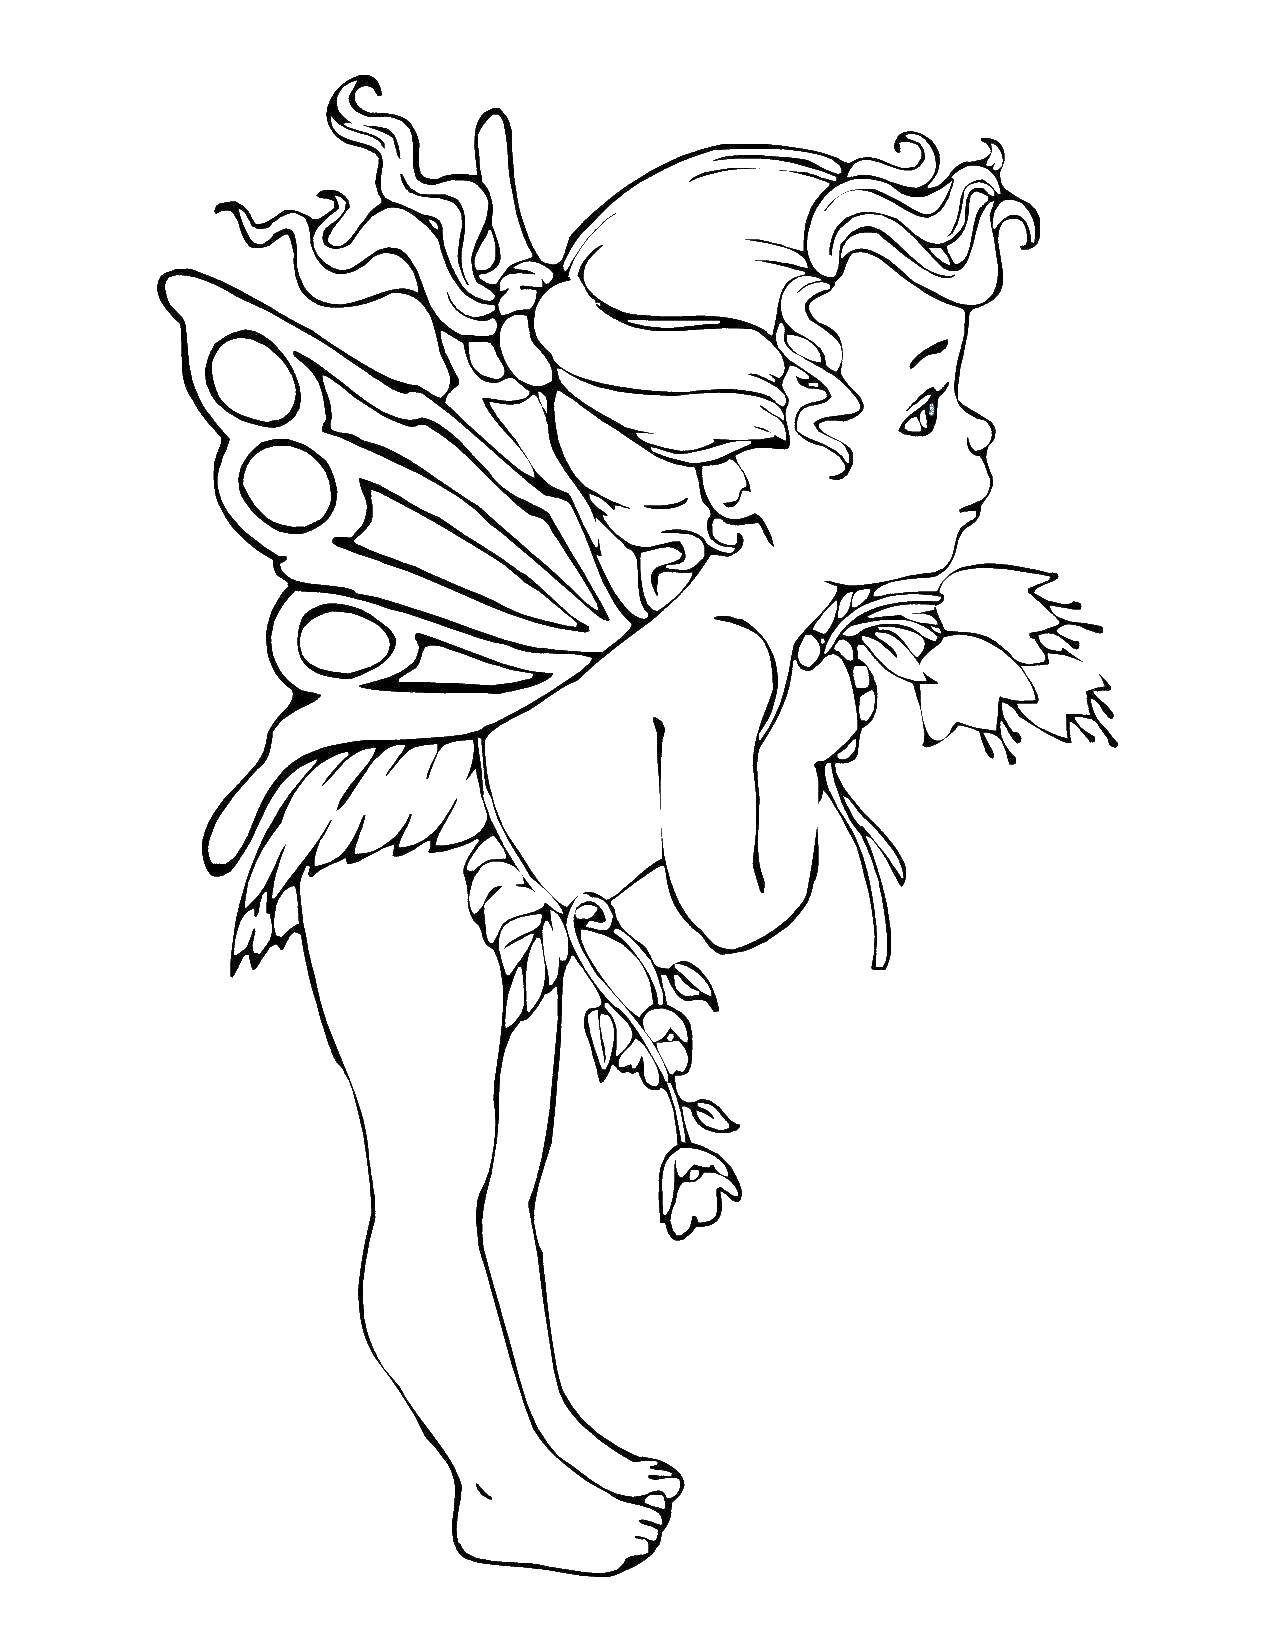 Название: Раскраска Феи. Категория: Фэнтези. Теги: феи, девочки, для девочек, крылья.